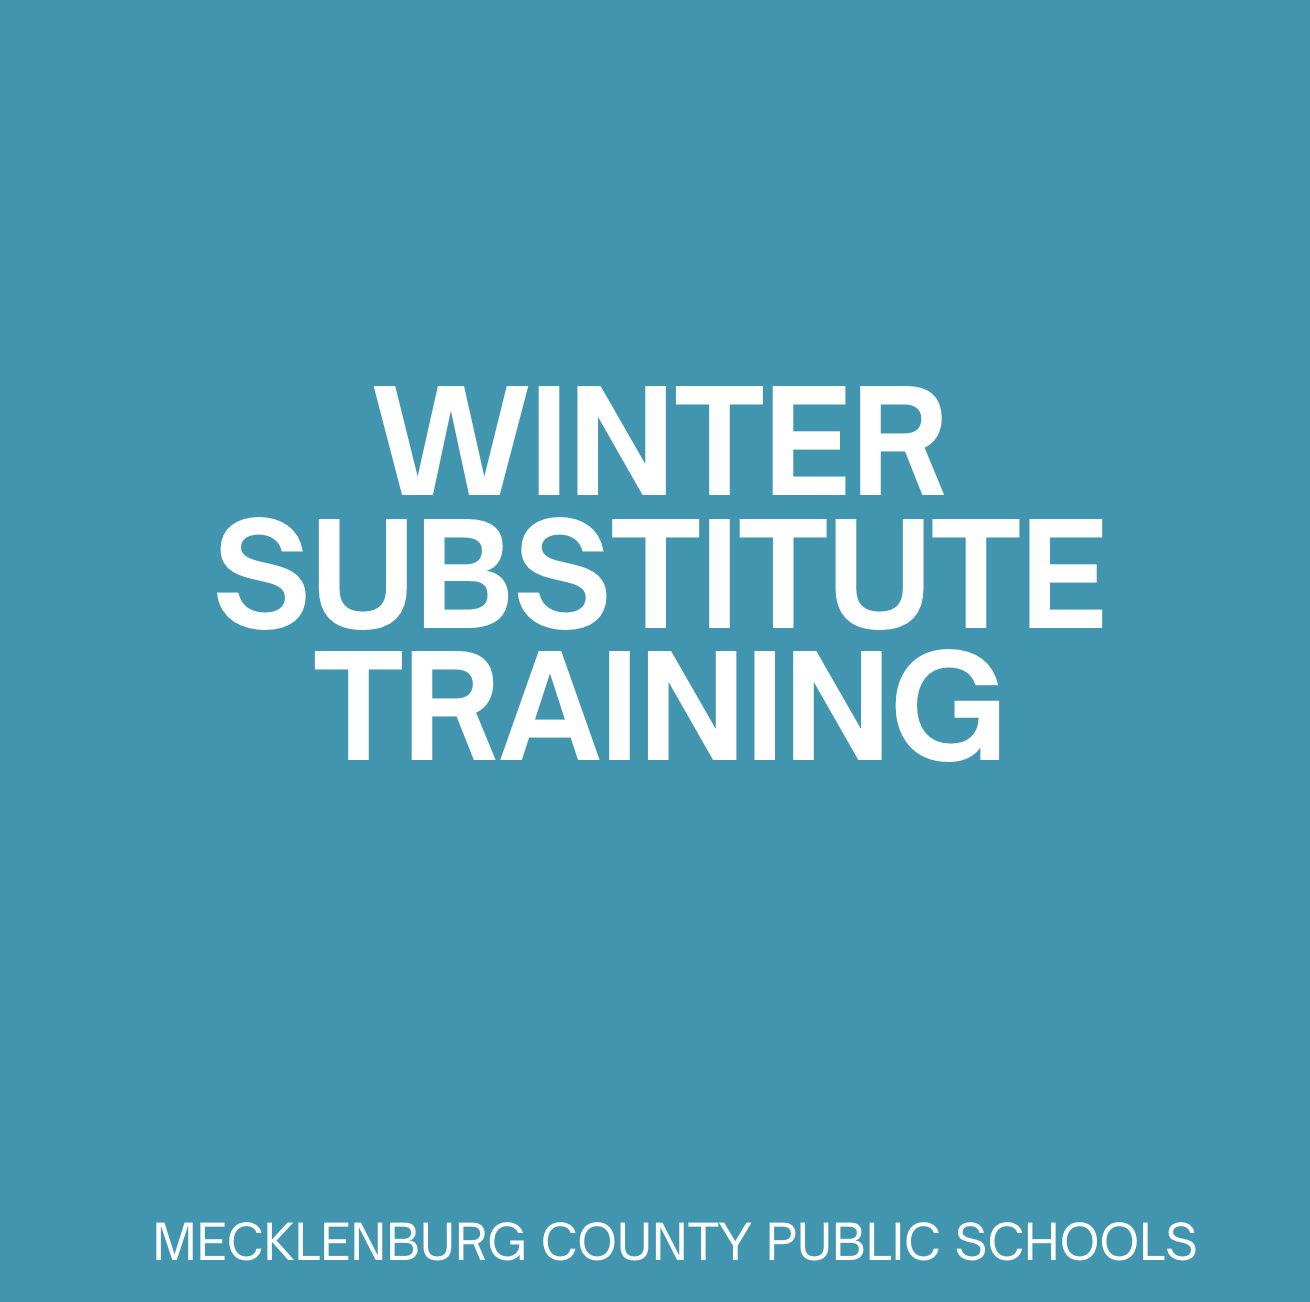 Winter Substitute Training Image